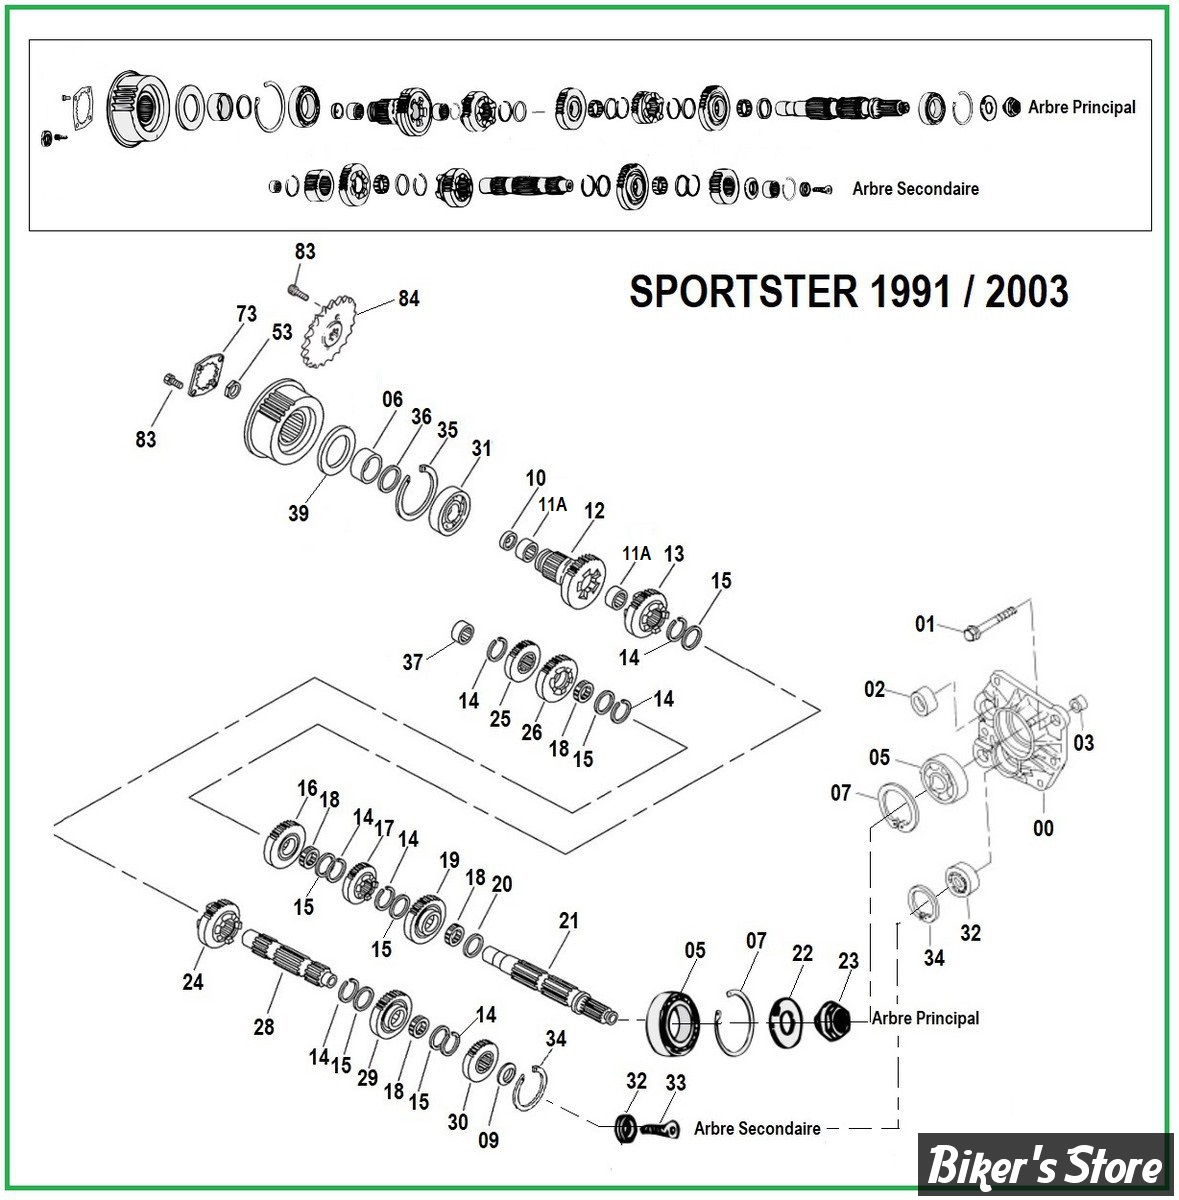   DOC A / PIÈCE N° 00 - Eclate de boite de vitesses - Sportster de 1991 à 2005.